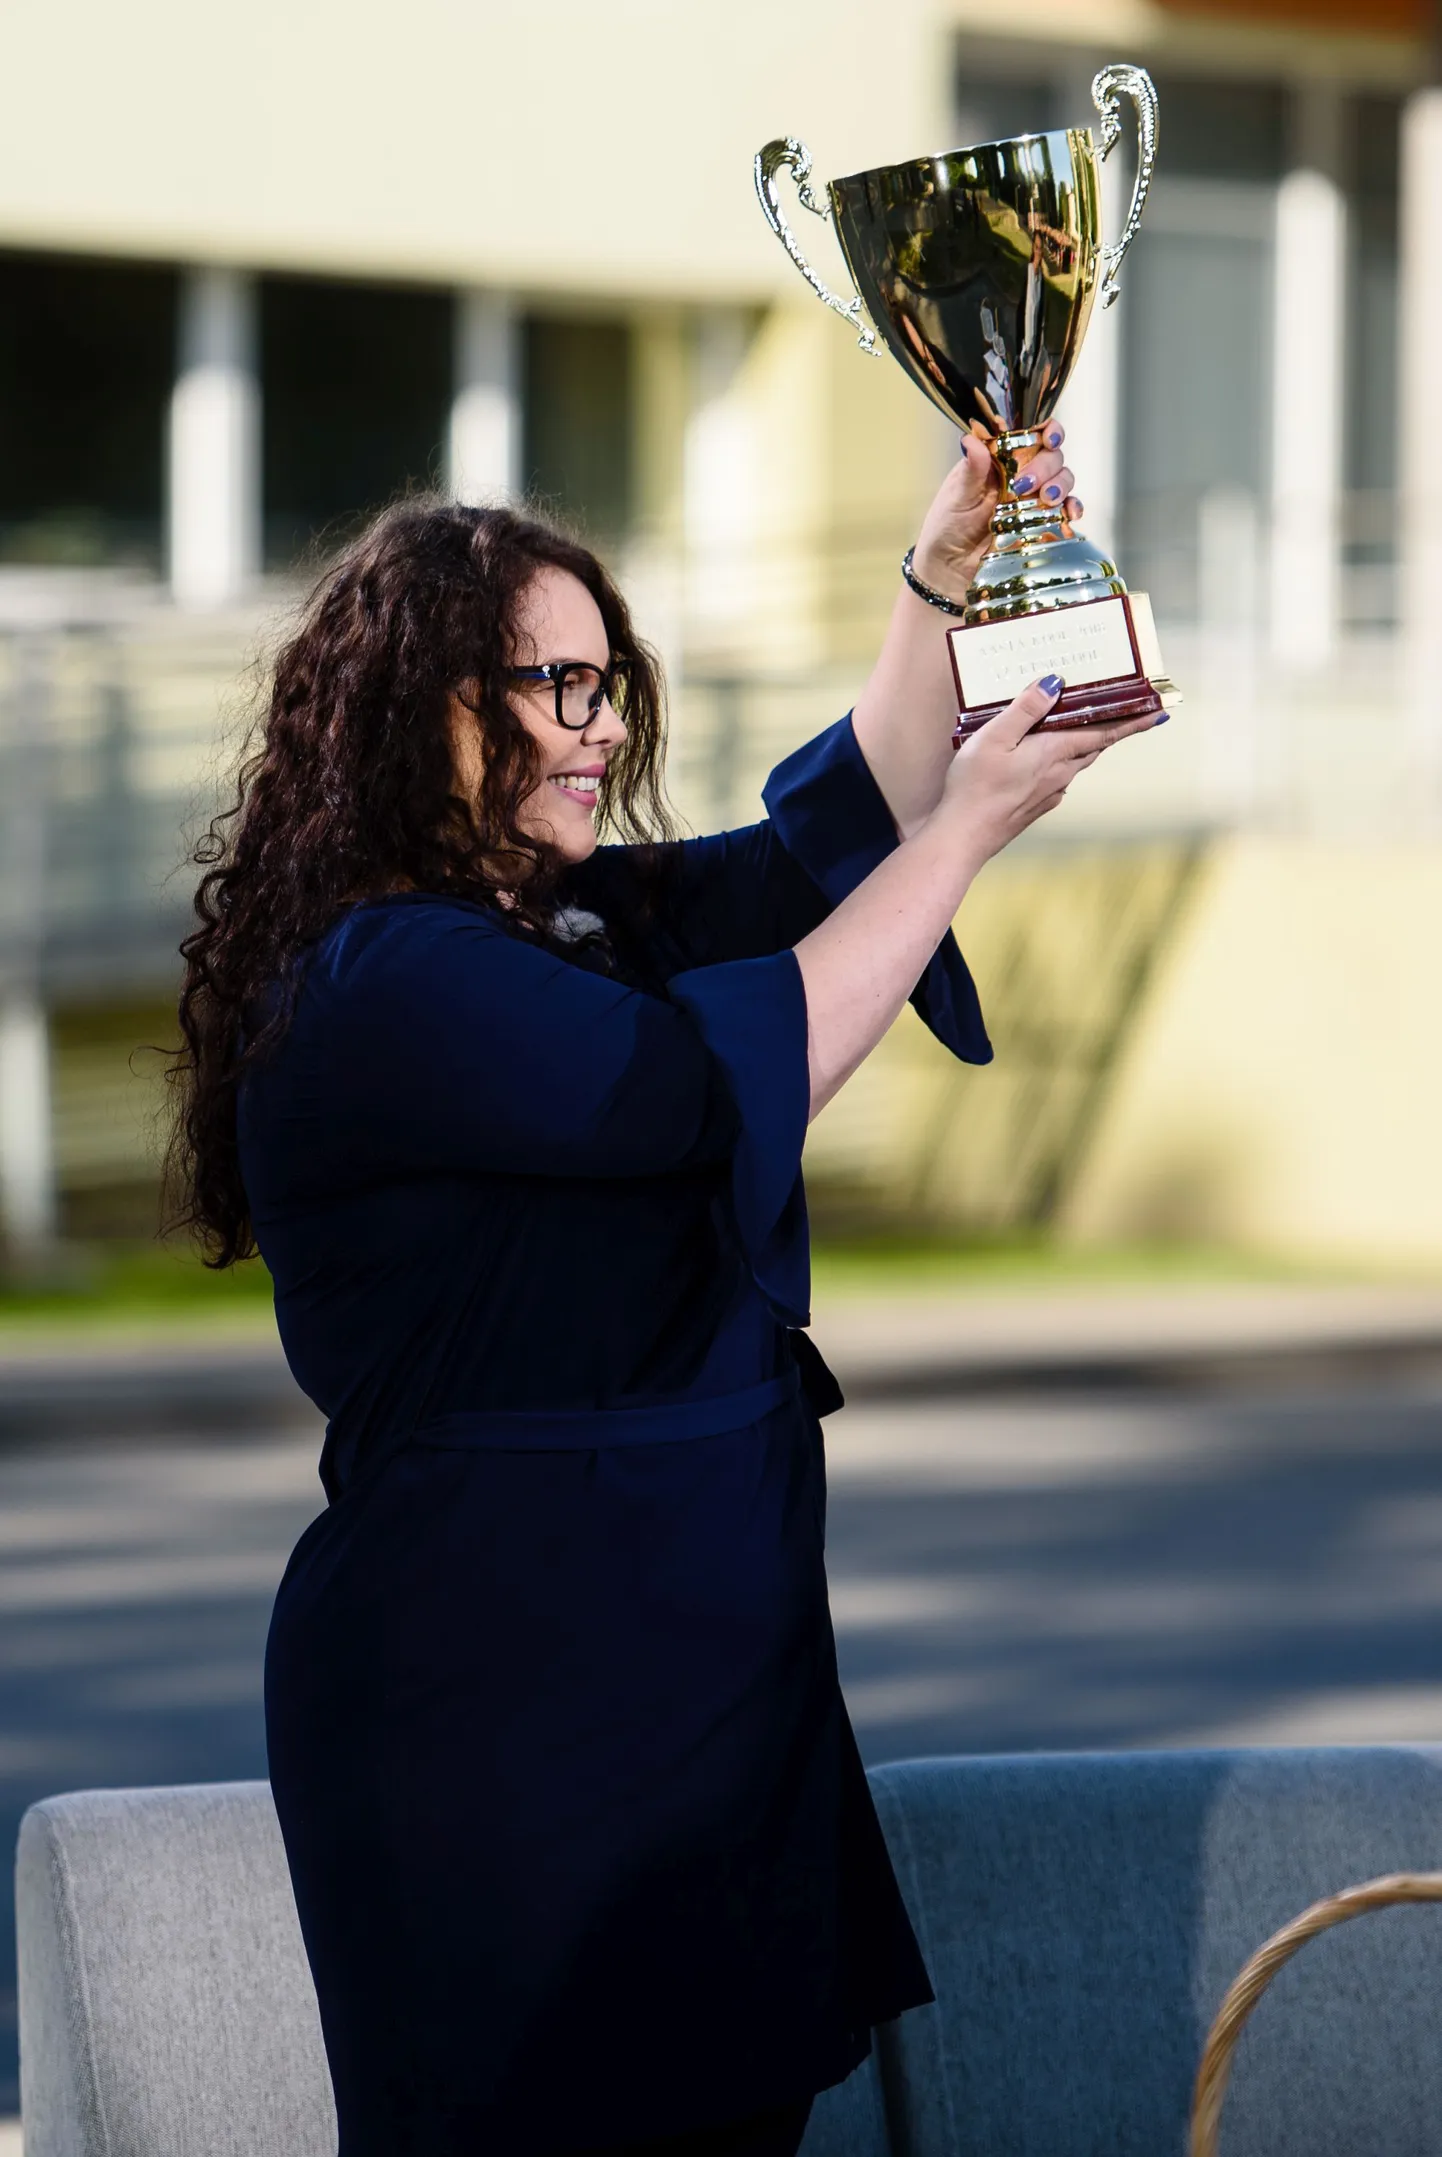 Aasta õppeasutuse juht 2019 Tallinna 32. keskkooli kooli direktor Maarja Merigan. Foto on tehtud 2018. aastal, mil võideti aasta kooli tiitel.